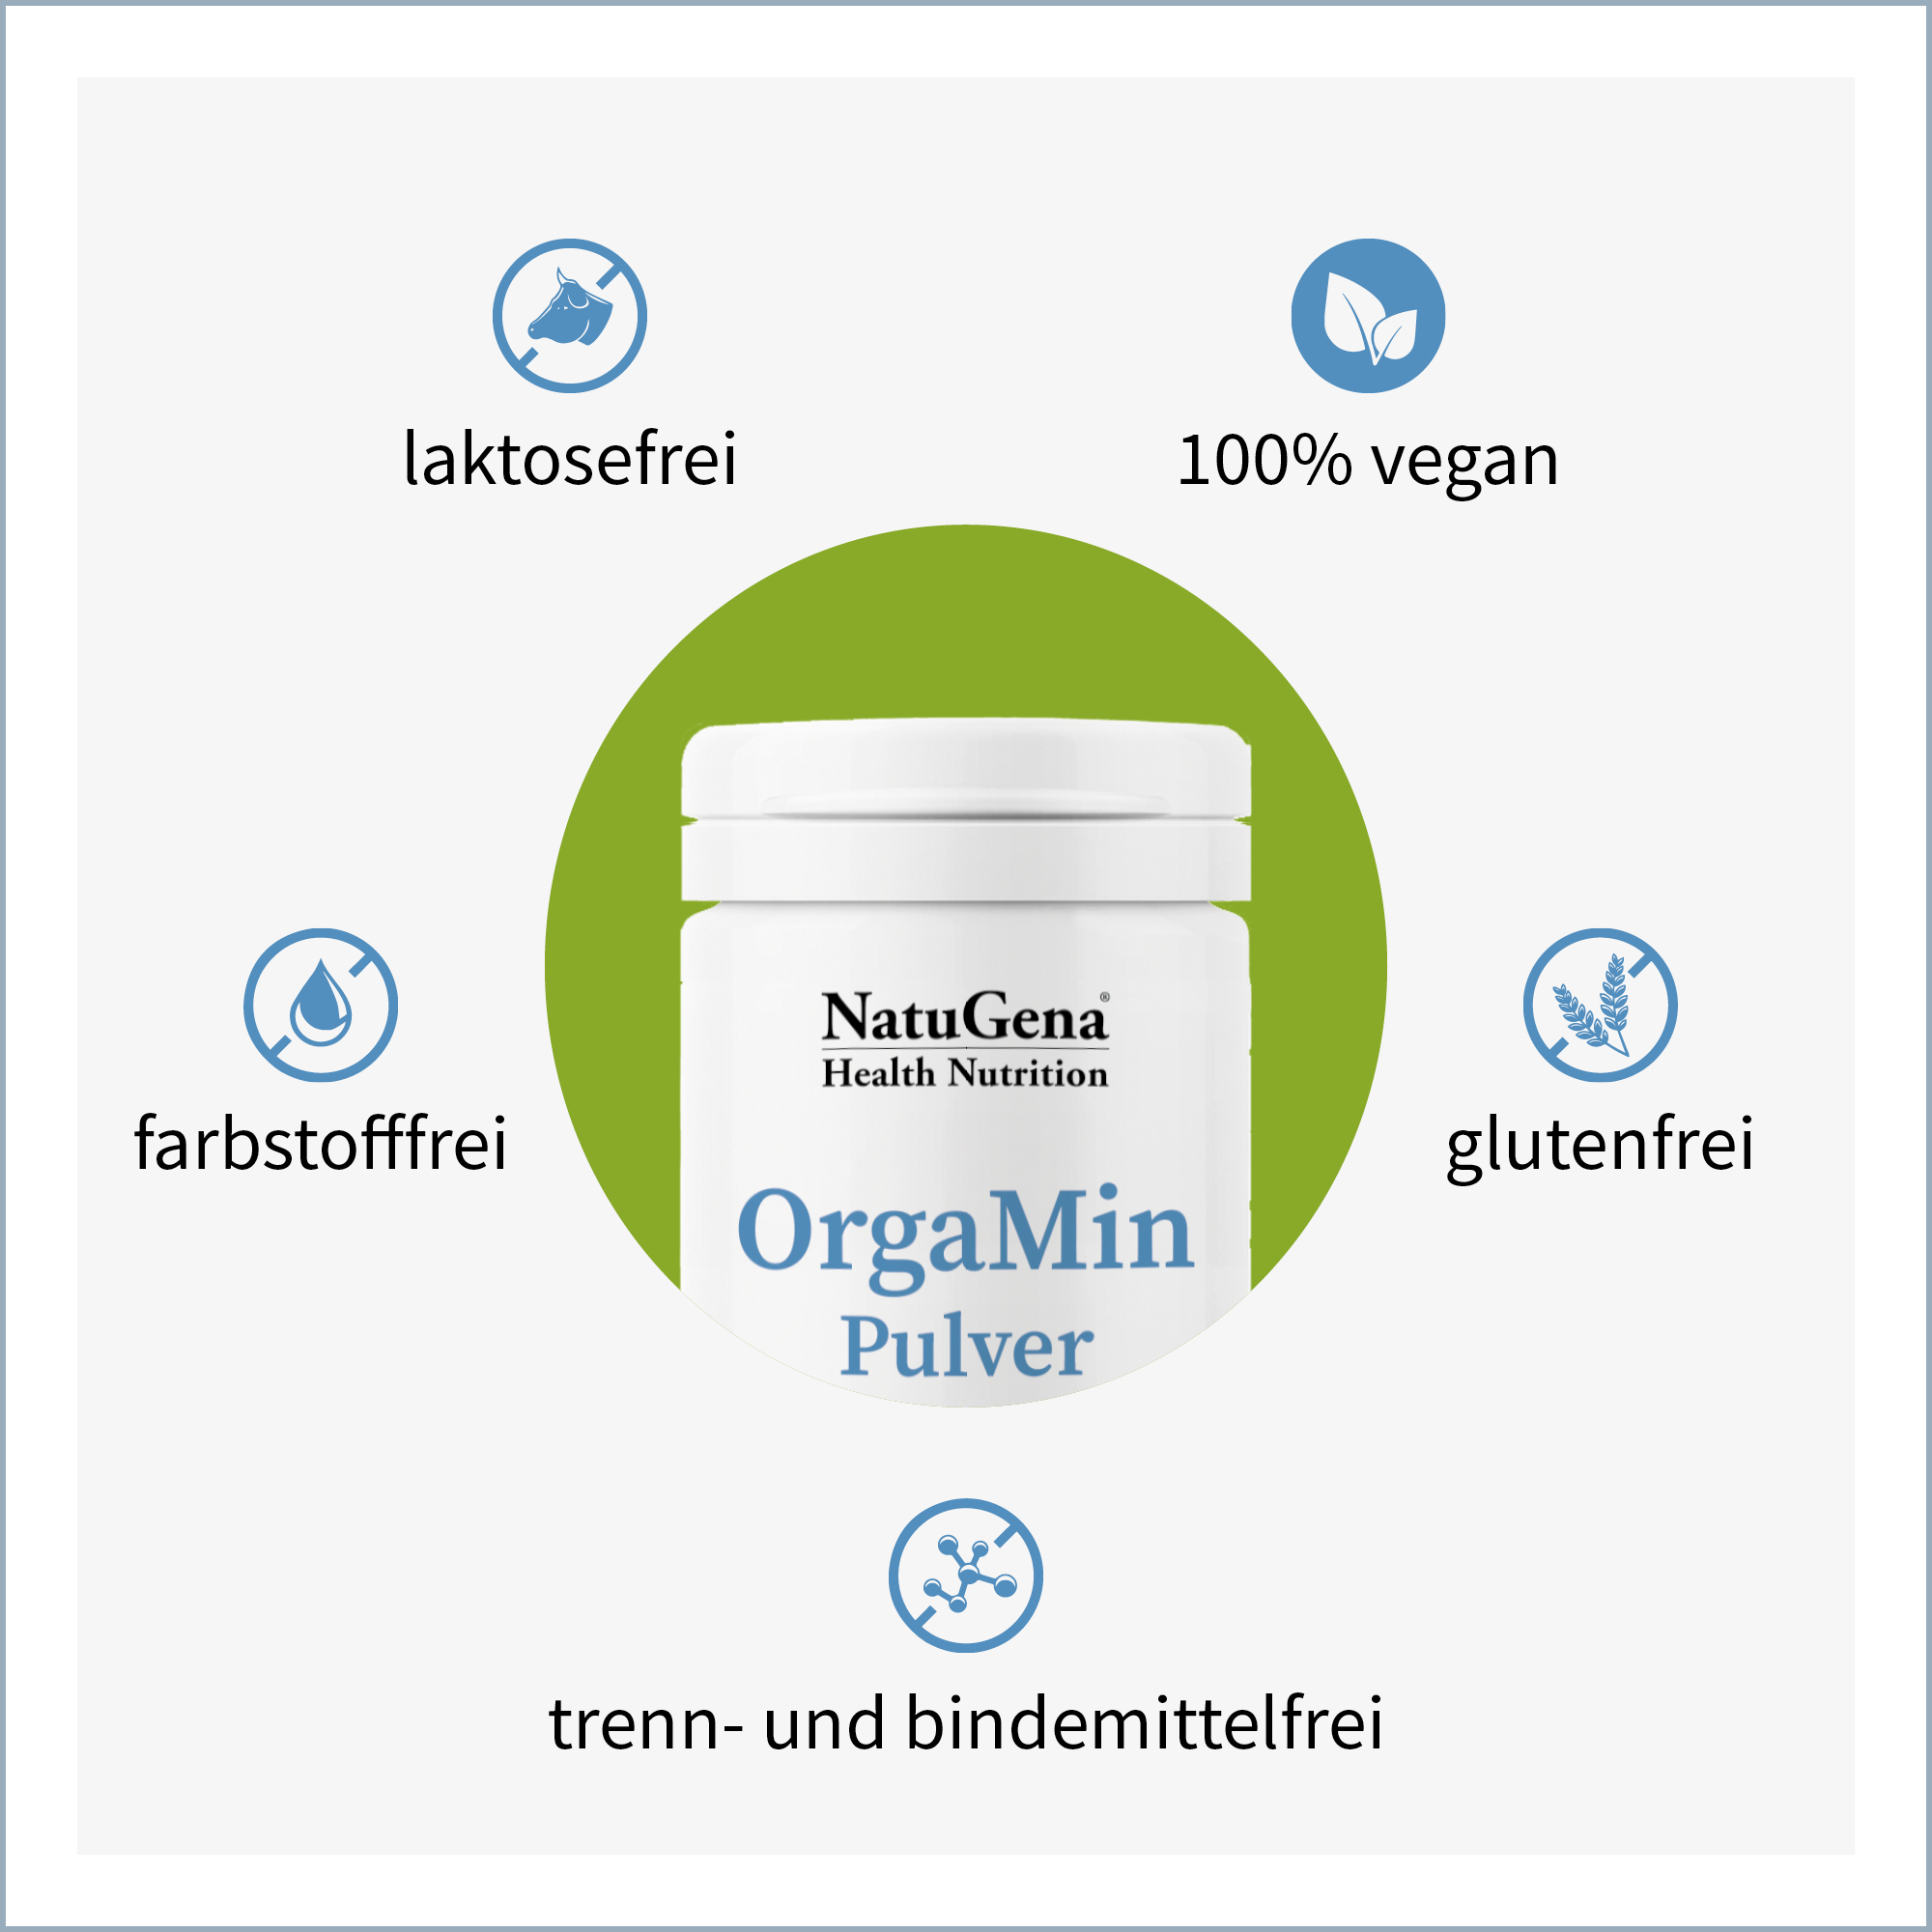 OrgaMin Pulver von NatuGena - Produkteigenschaften